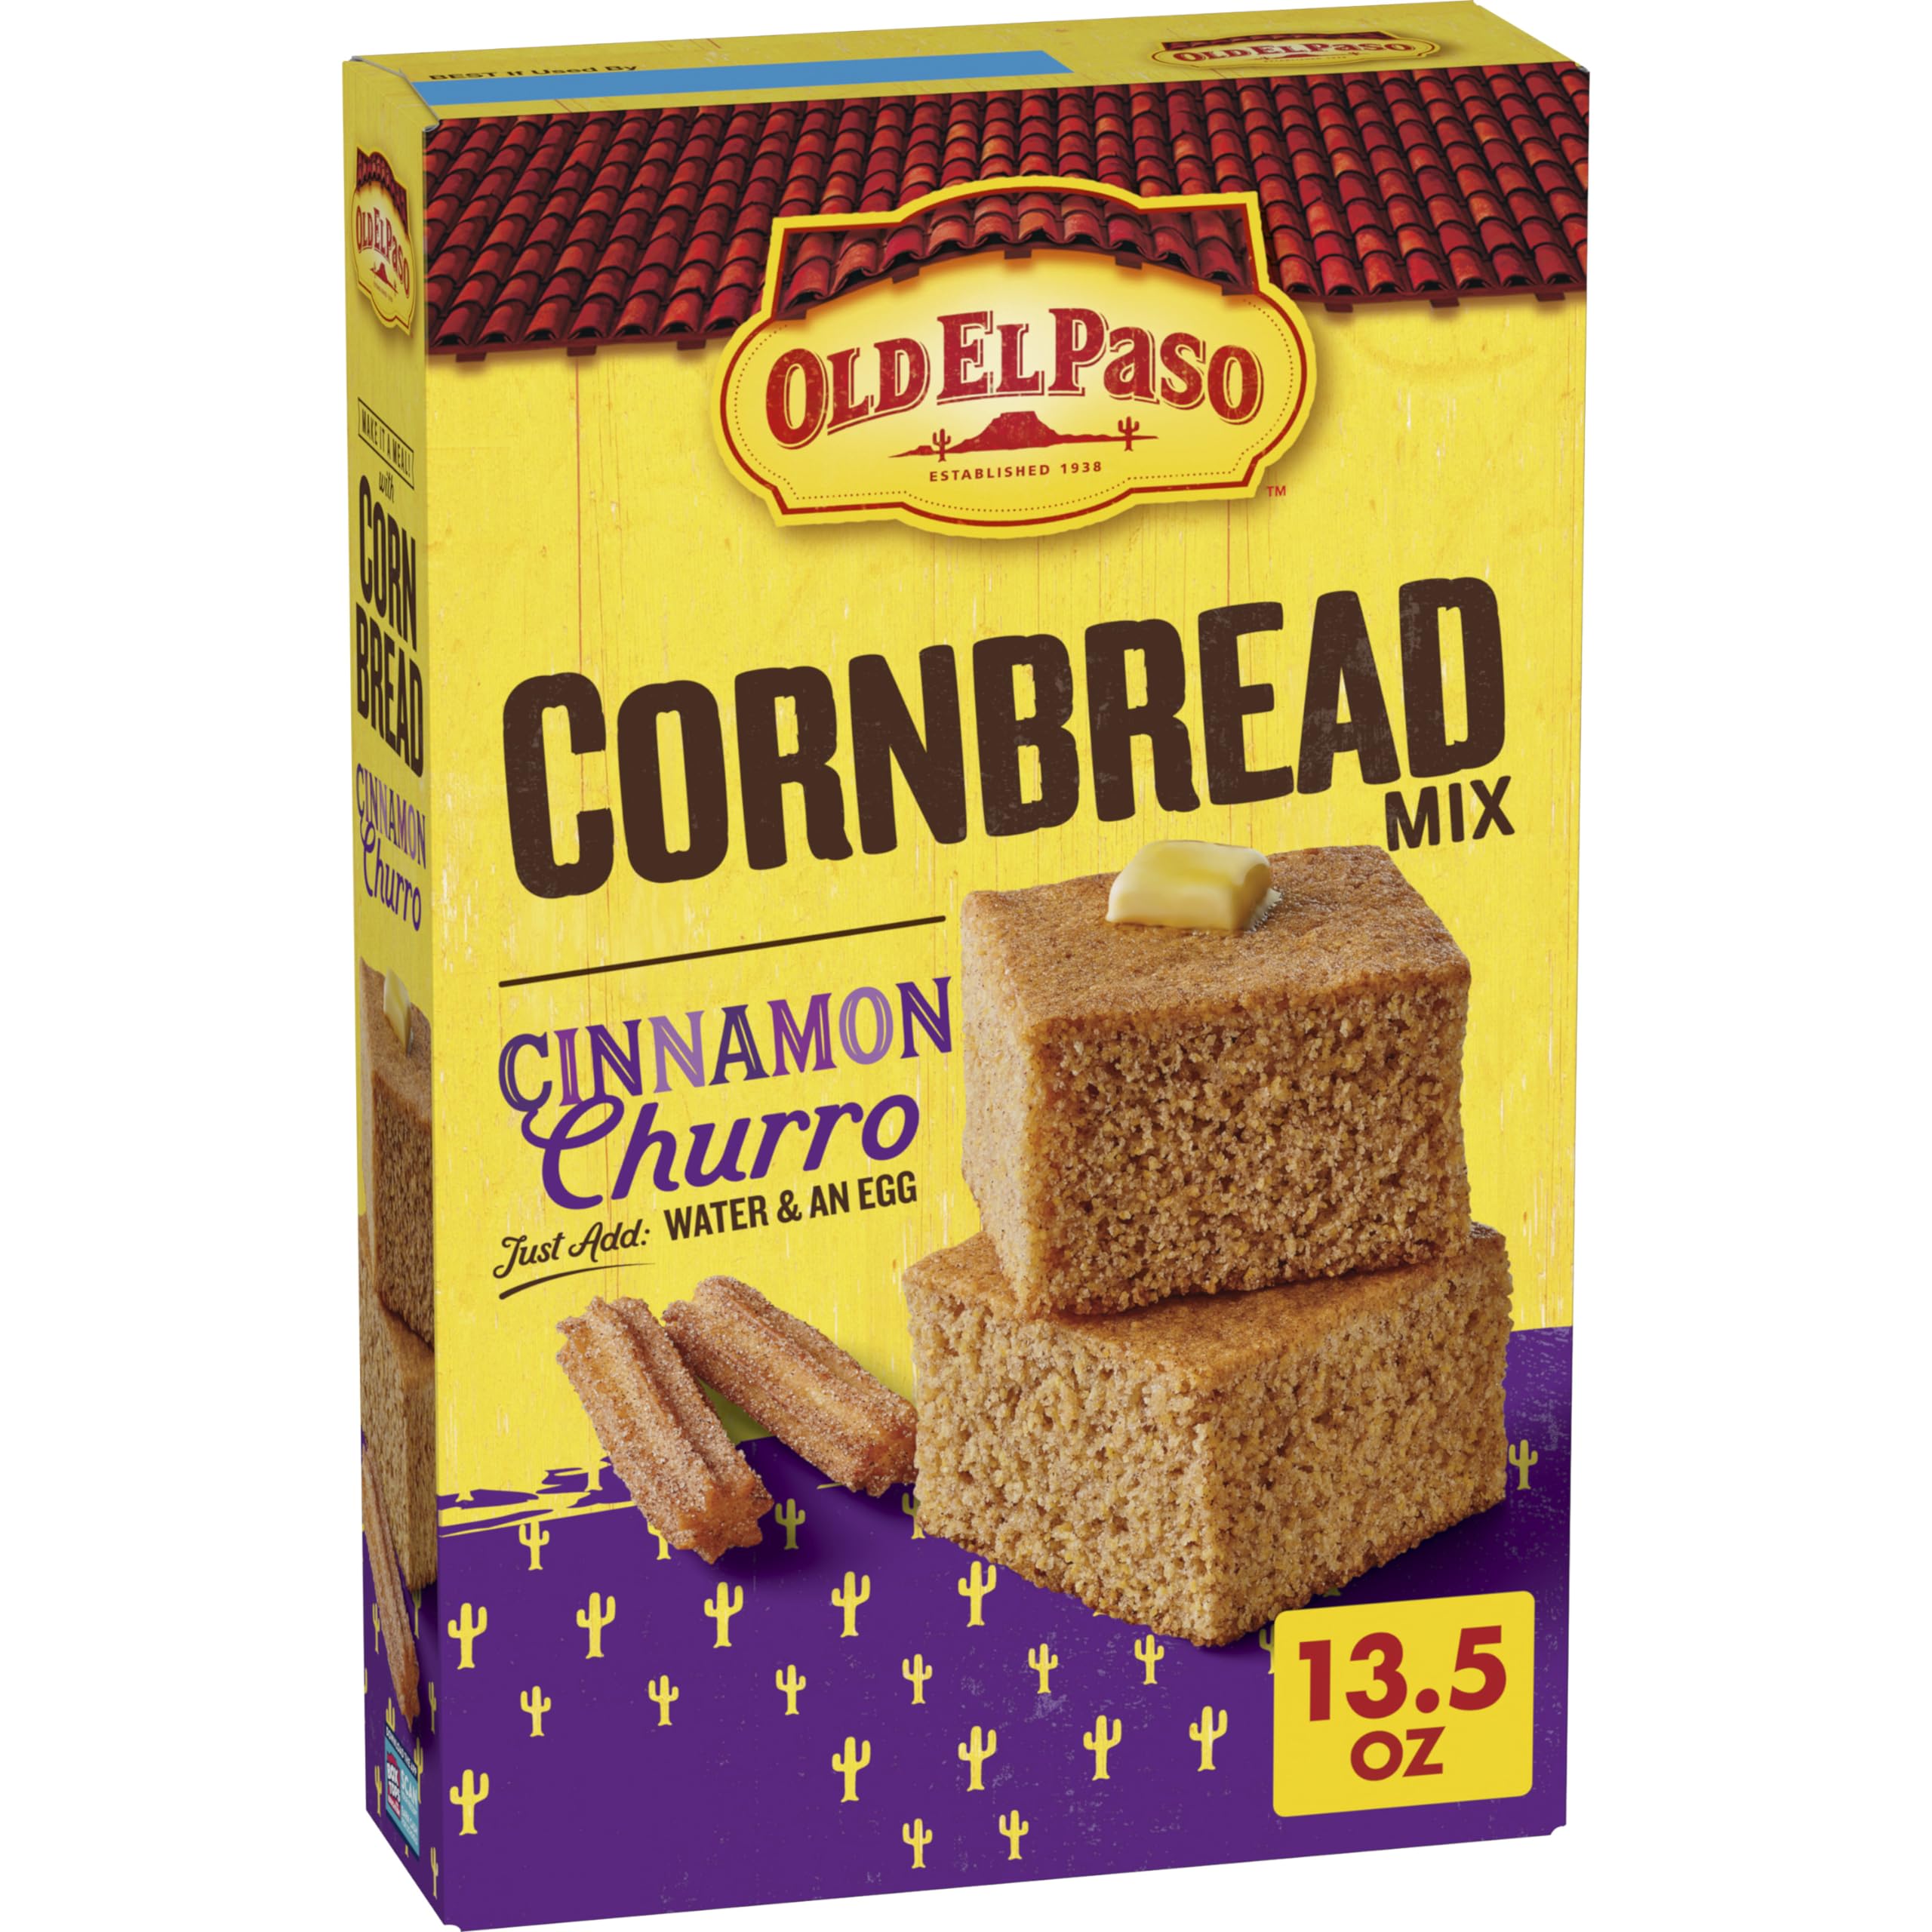 13.5-Oz Old El Paso Cornbread Mix (Cinnamon Churro) $1.85 w/ S&S + Free Shipping w/ Prime or on $35+